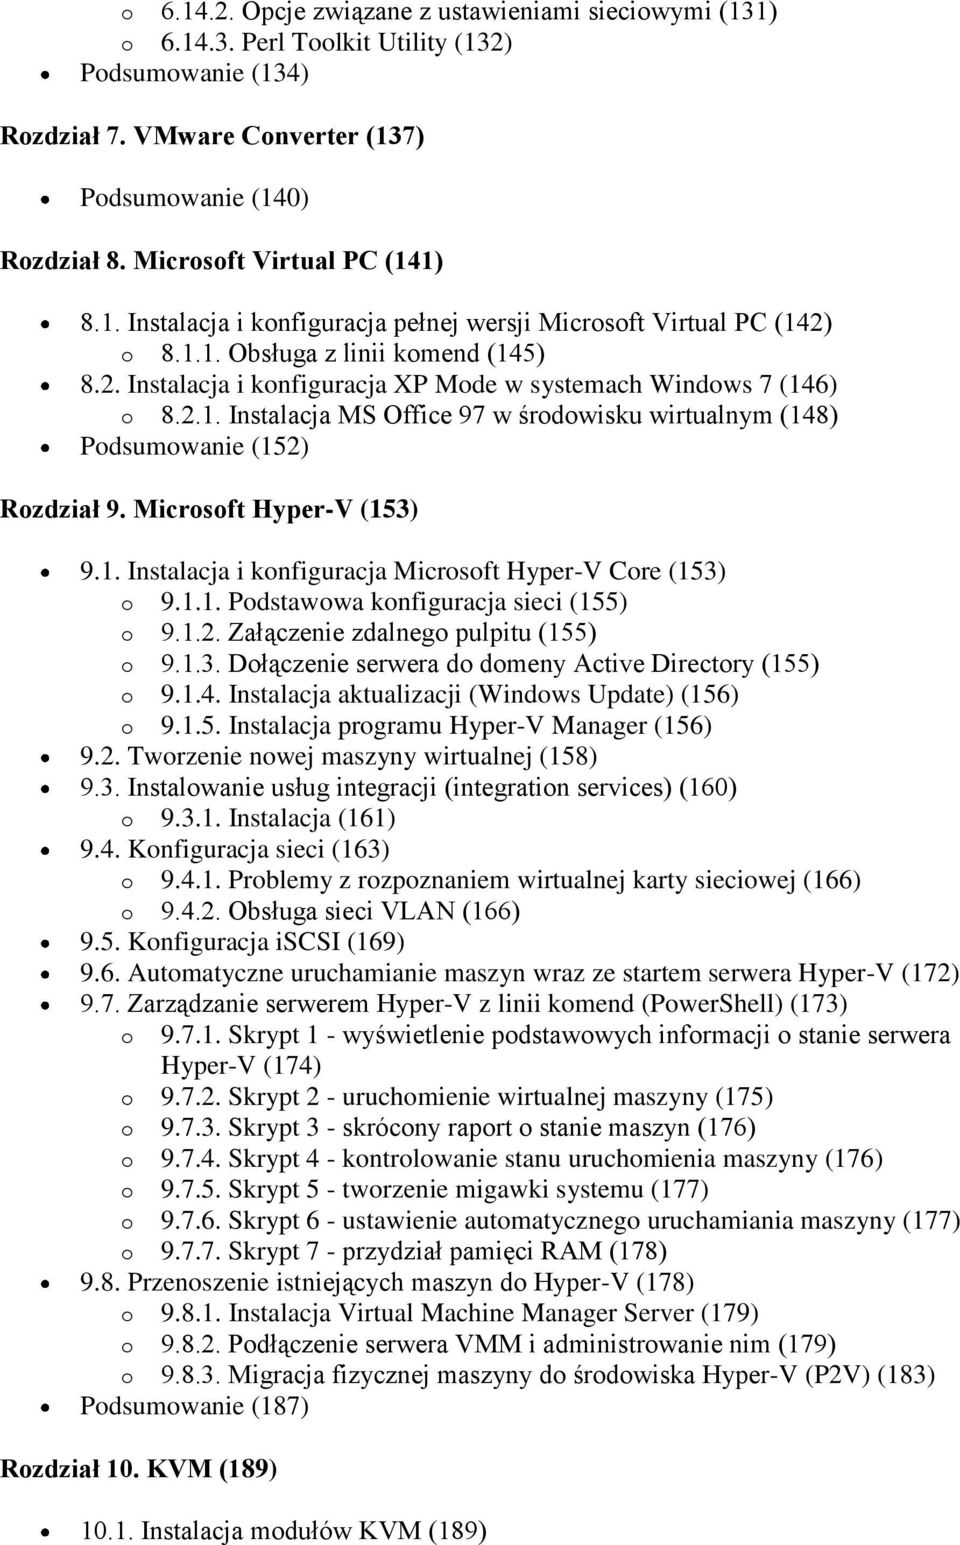 2.1. Instalacja MS Office 97 w środowisku wirtualnym (148) Podsumowanie (152) Rozdział 9. Microsoft Hyper-V (153) 9.1. Instalacja i konfiguracja Microsoft Hyper-V Core (153) o 9.1.1. Podstawowa konfiguracja sieci (155) o 9.